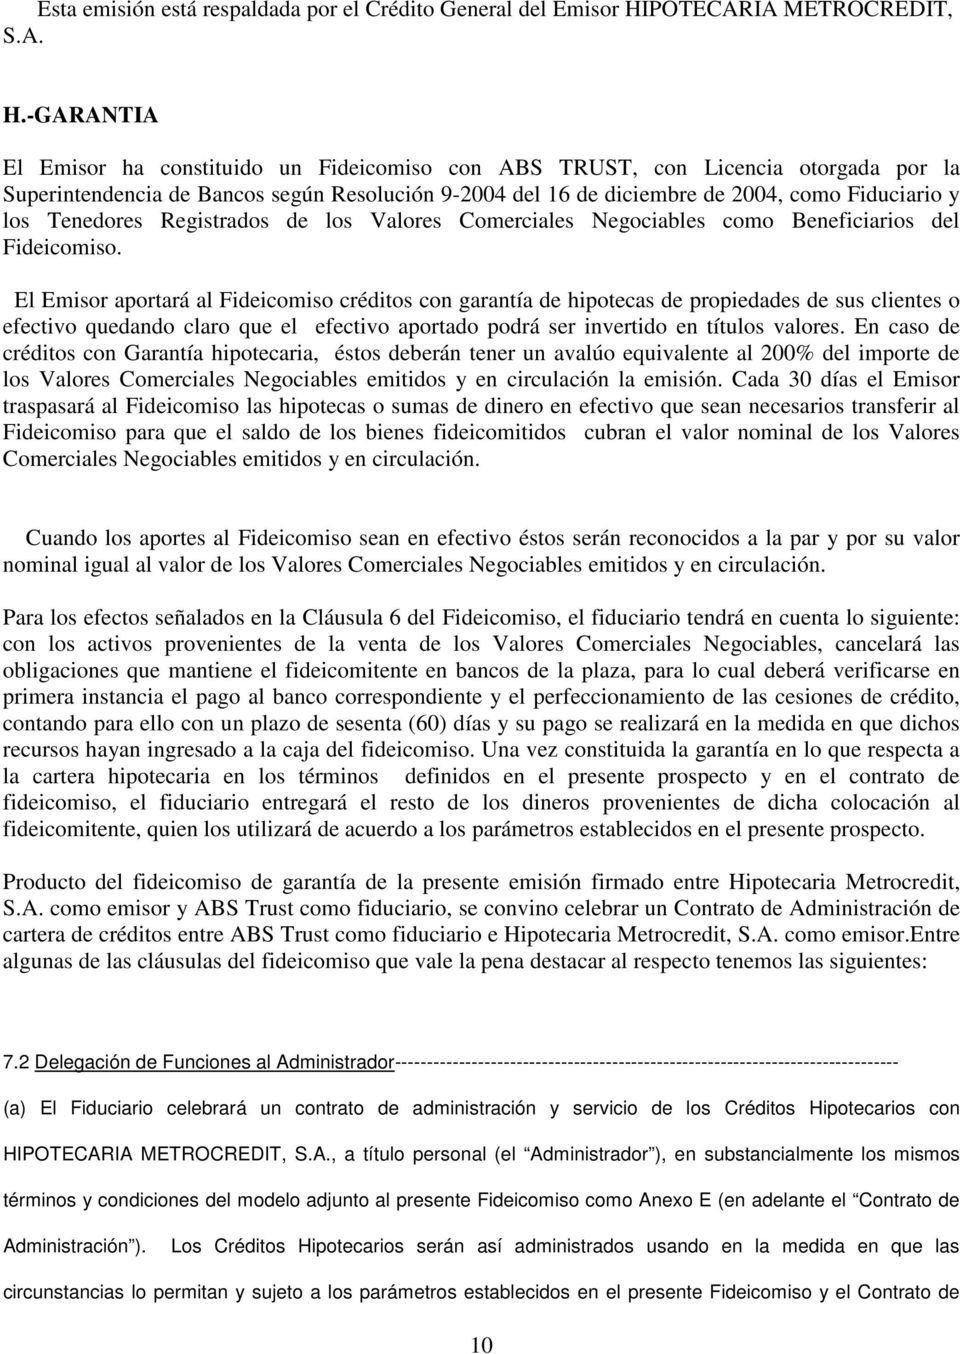 -GARANTIA El Emisor ha constituido un Fideicomiso con ABS TRUST, con Licencia otorgada por la Superintendencia de Bancos según Resolución 9-2004 del 16 de diciembre de 2004, como Fiduciario y los